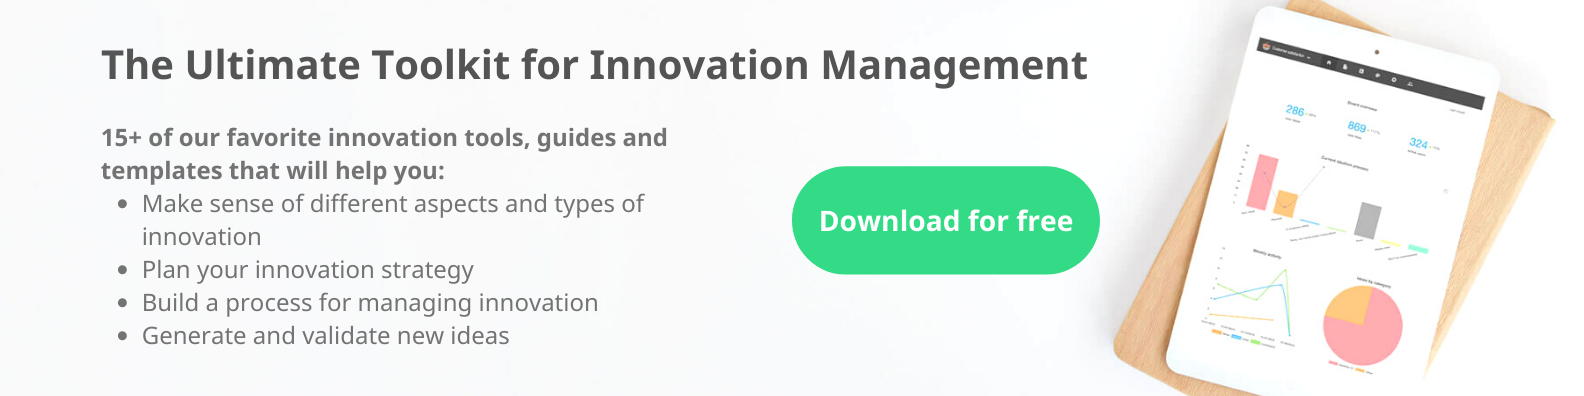 Toolkit for innovation management_slim banner